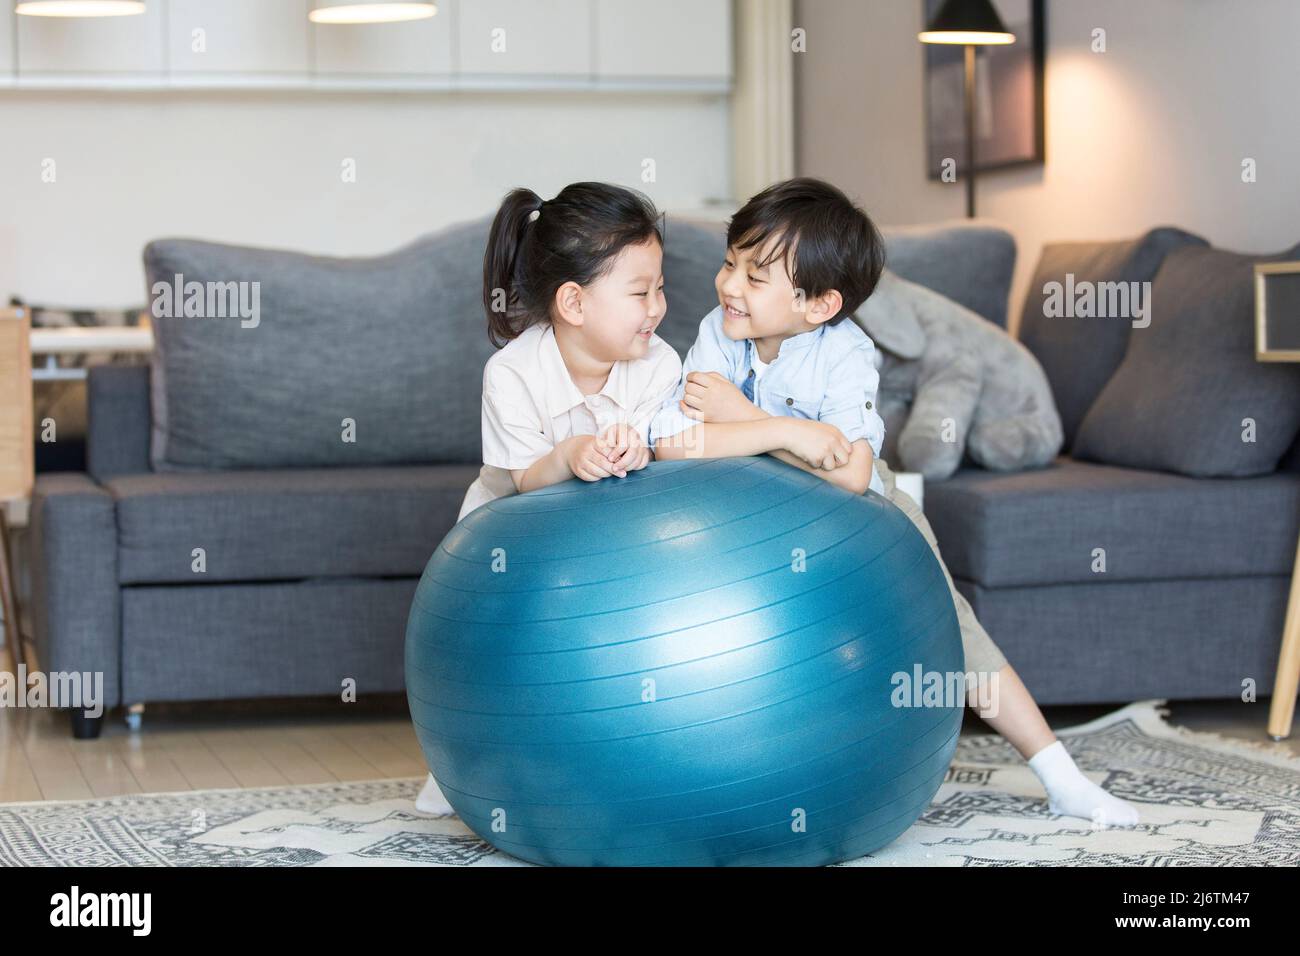 Un garçon et une fille jouant intimement dans le salon de leur maison - photo de stock Banque D'Images